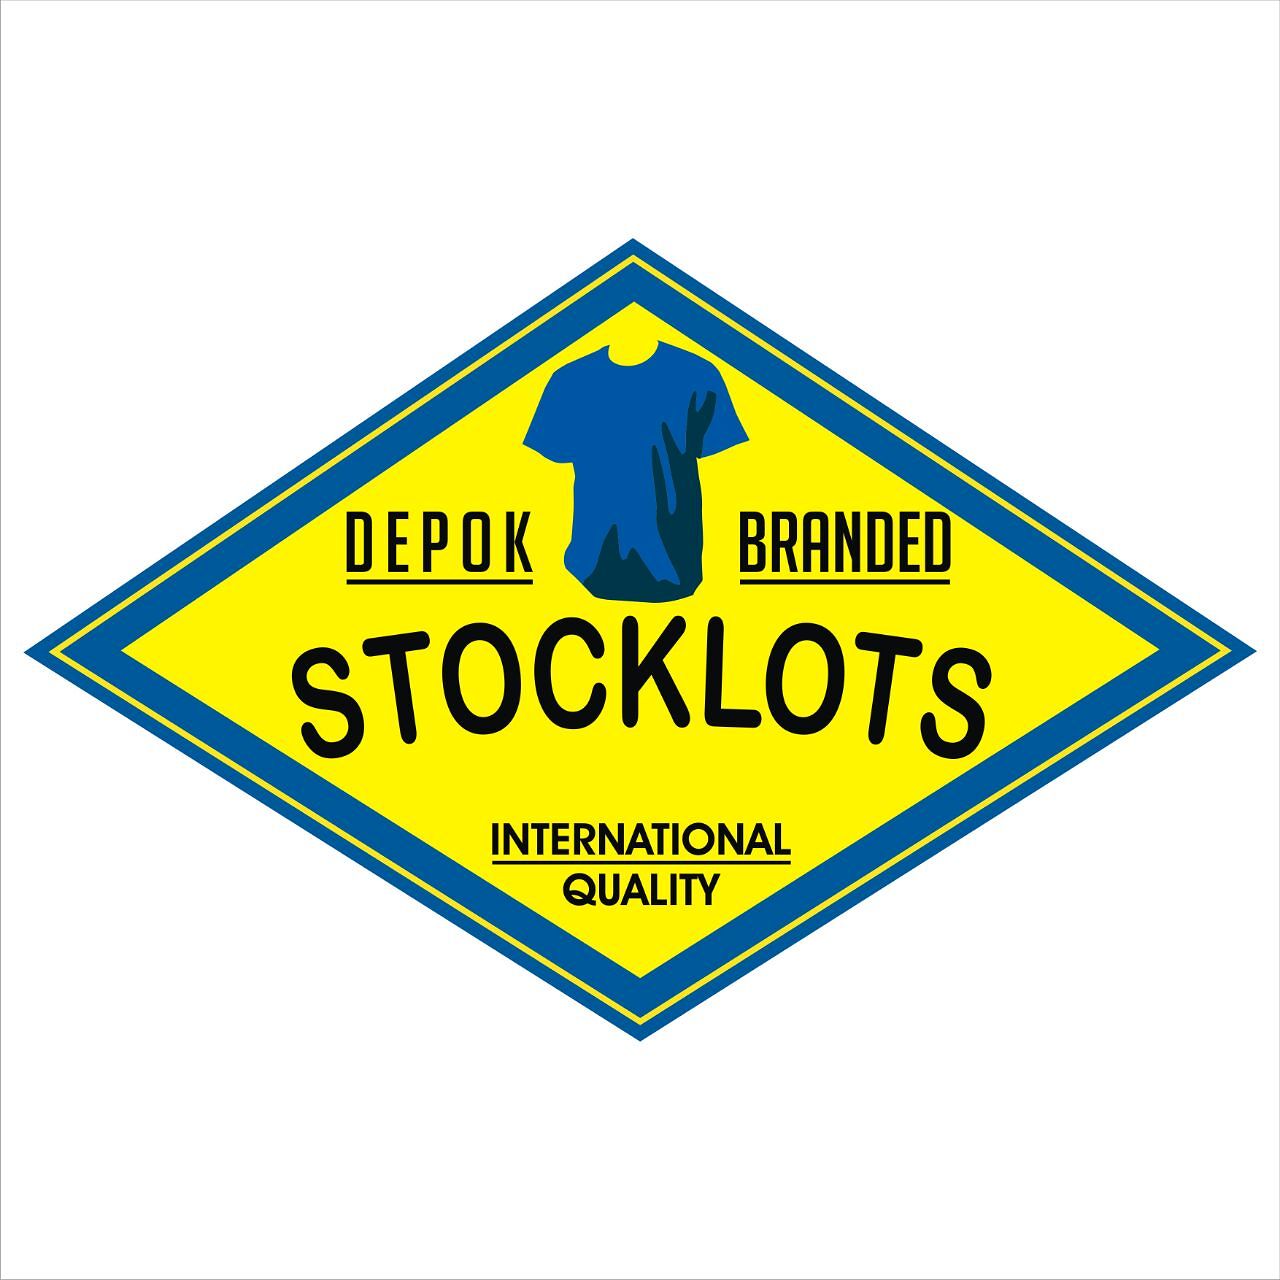 Grosir Pakaian Branded Depok Branded Stocklots